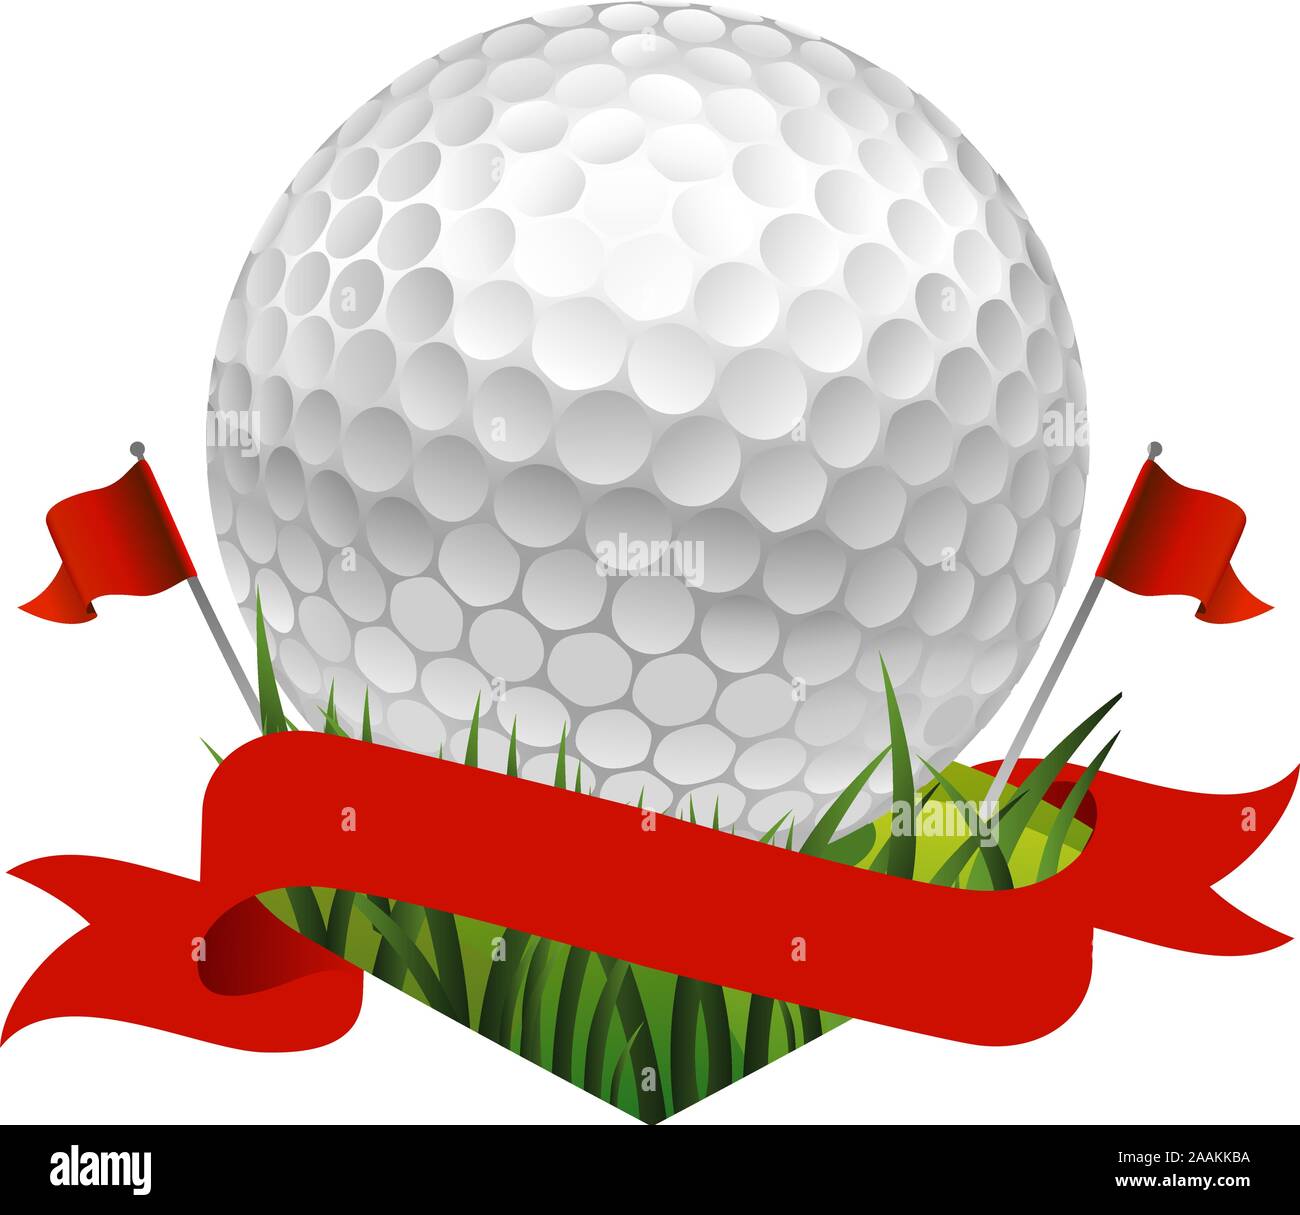 Golf rouge bannière drapeau avec une balle de golf Image Vectorielle Stock  - Alamy